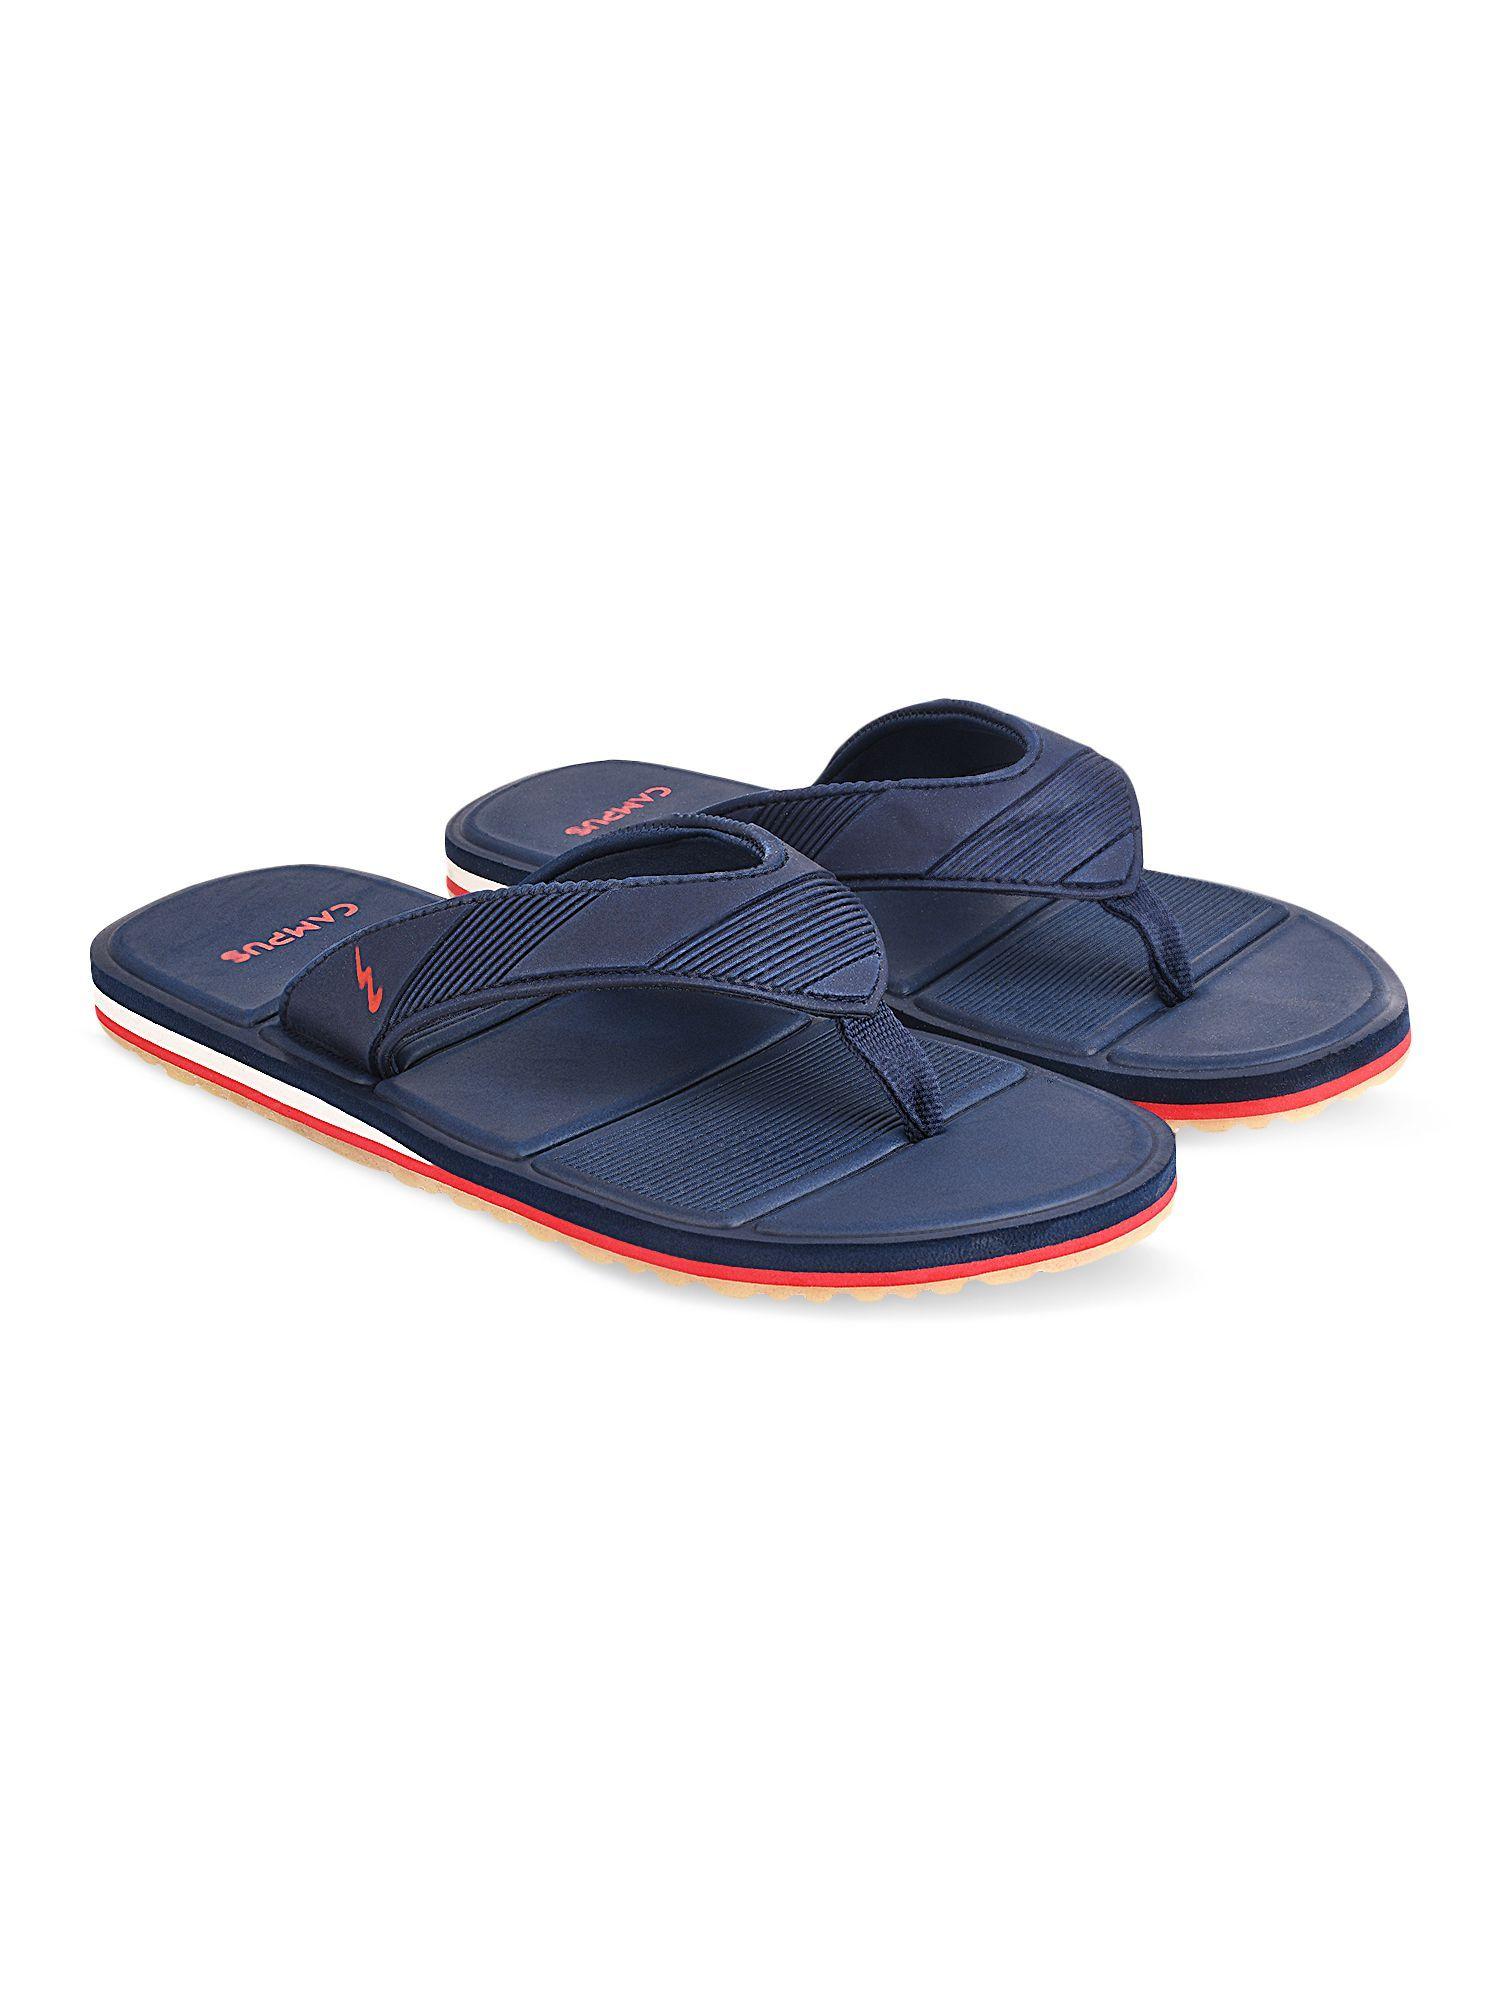 patterned-blue-flip-flops-for-men